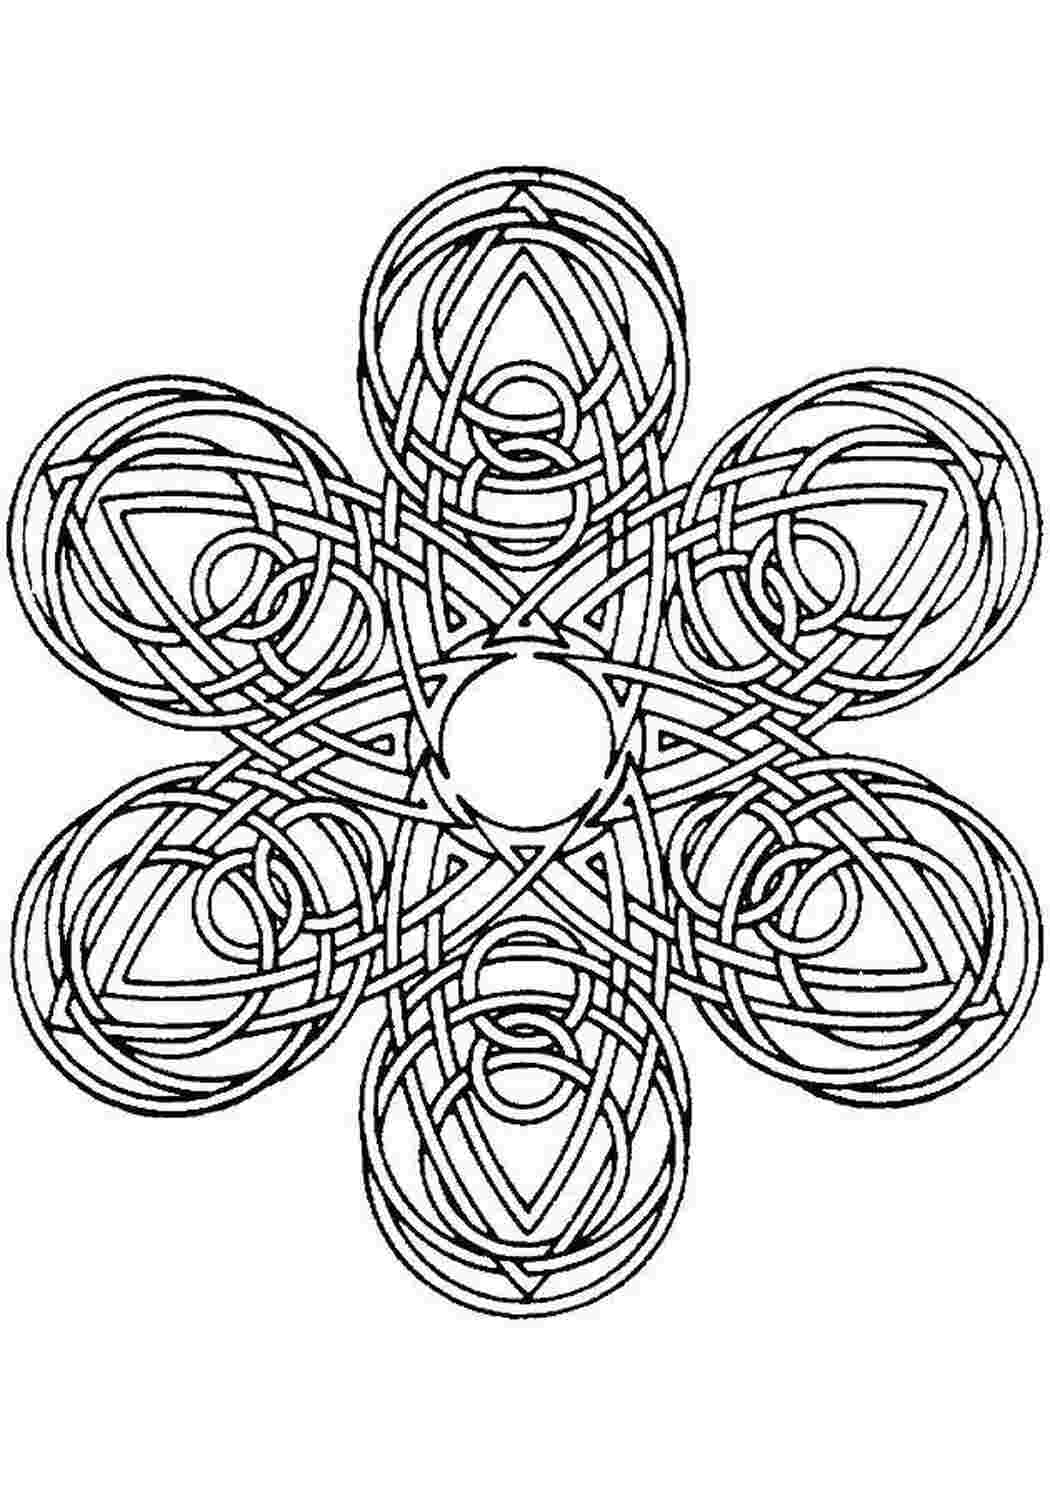 Раскраски Геометричекий цветок С геометрическими фигурами геометрия, цветок